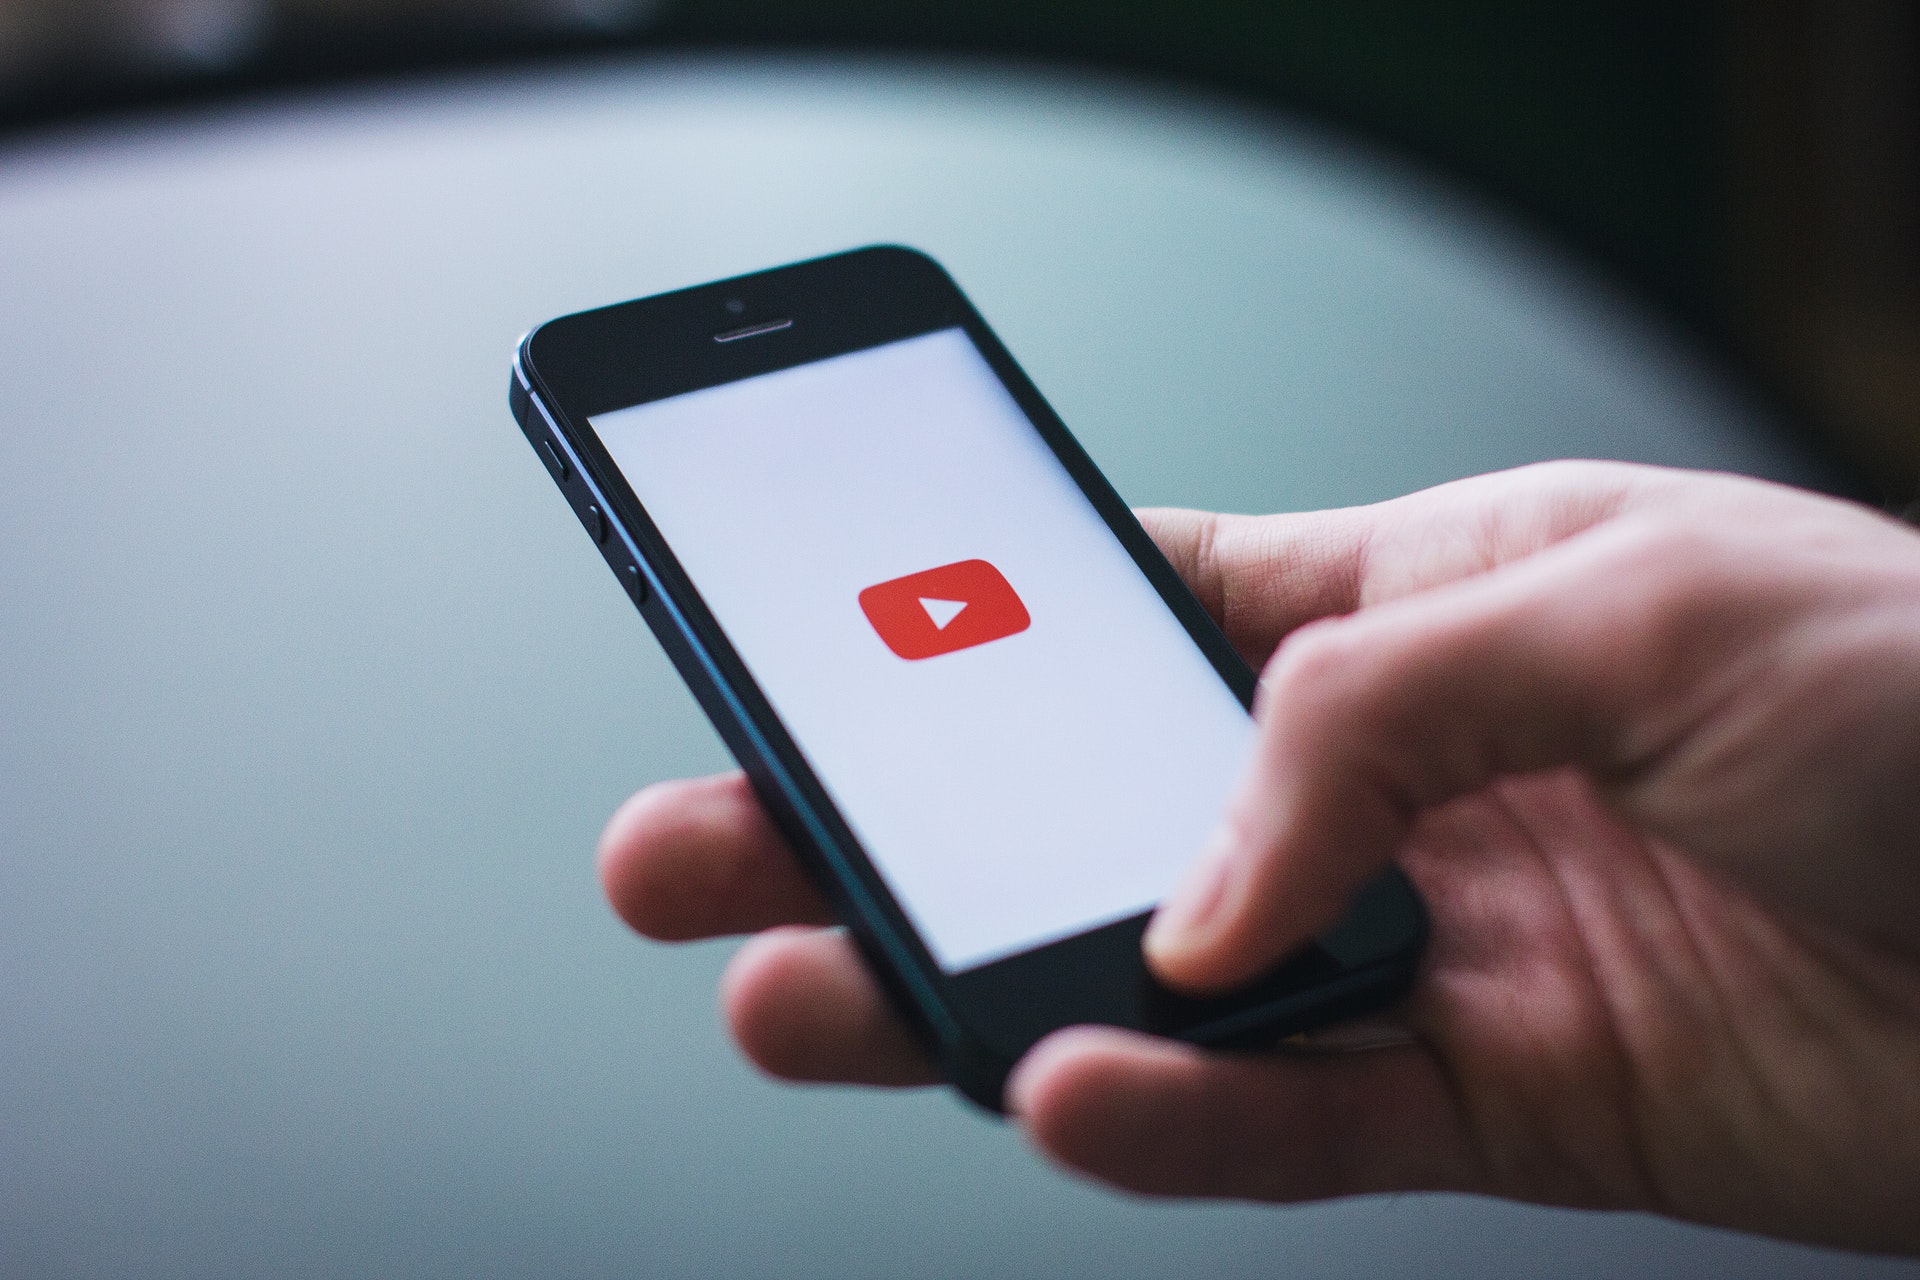 MOBILE ADVERTISING - YouTube dla reklamodawców - zarządzanie bezpieczeństwem i spójnością marki Reklama YouTube dla reklamodawcow zarzadzanie bezpieczenstwem i spojnoscia marki